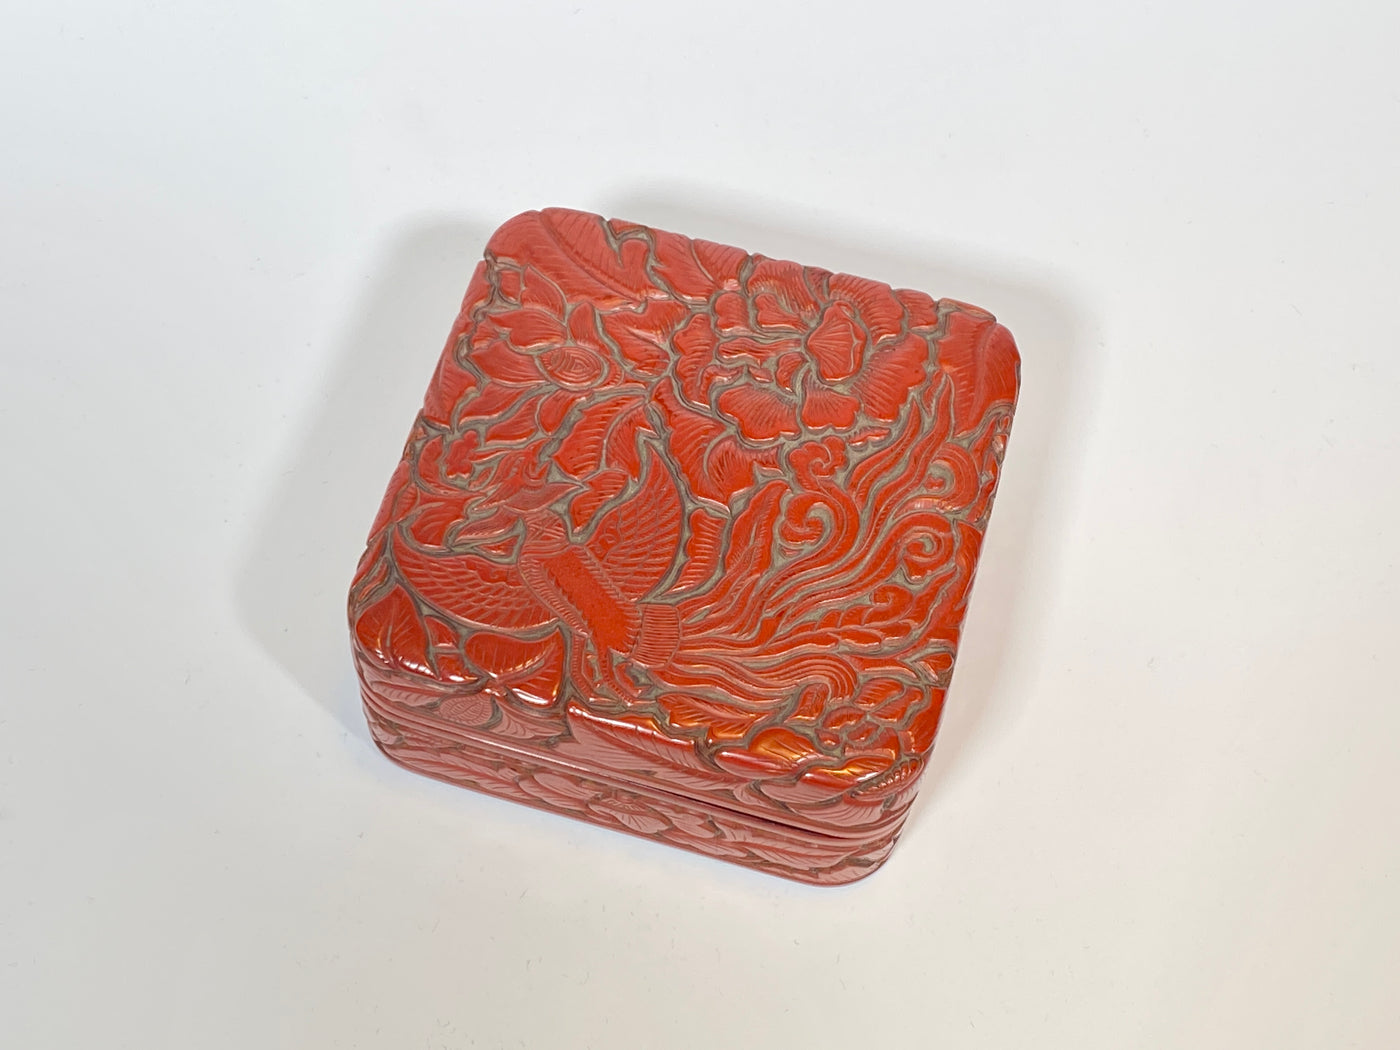 堆朱鳳凰四方箱 Red lacquer box with design of phoenix and flowers